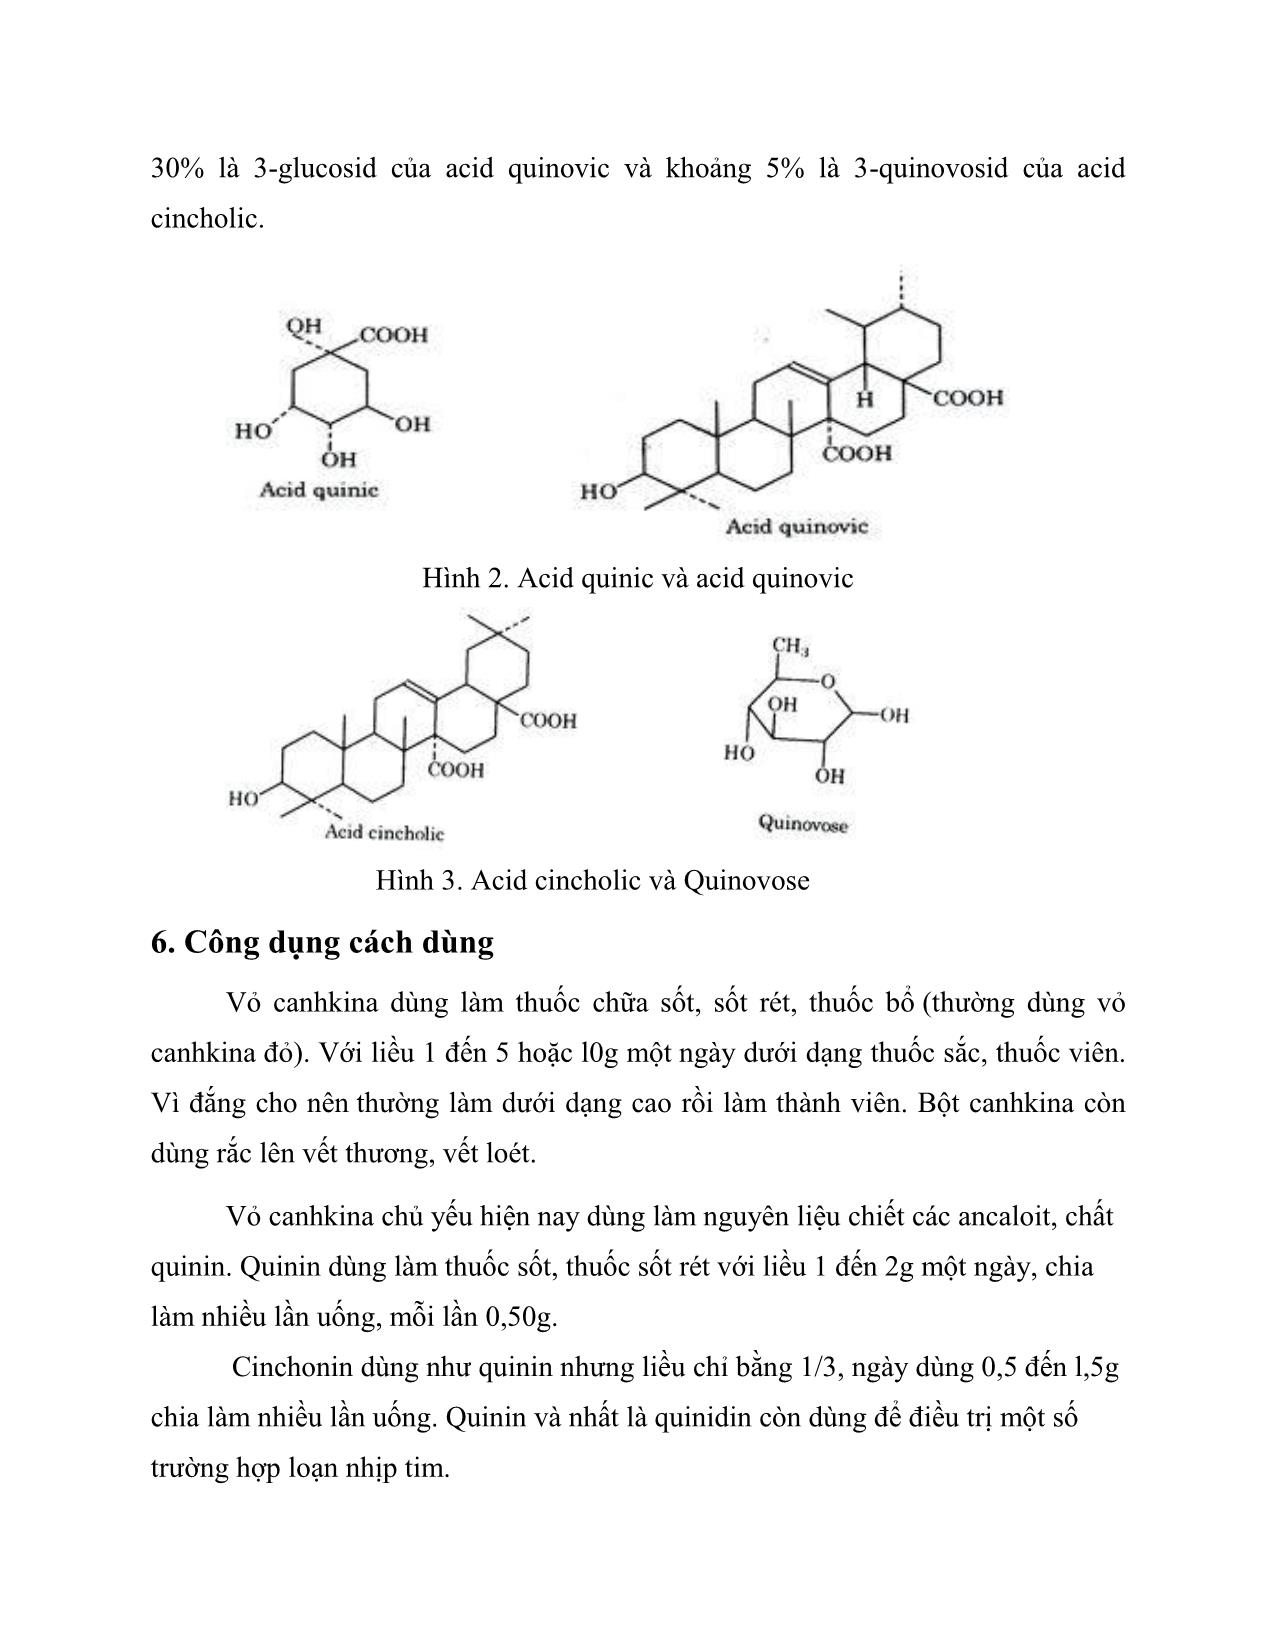 Tiểu luận Công nghệ sản xuất dược phẩm kỹ thuật chiết xuất quinidin từ cinchona condaminea trang 7